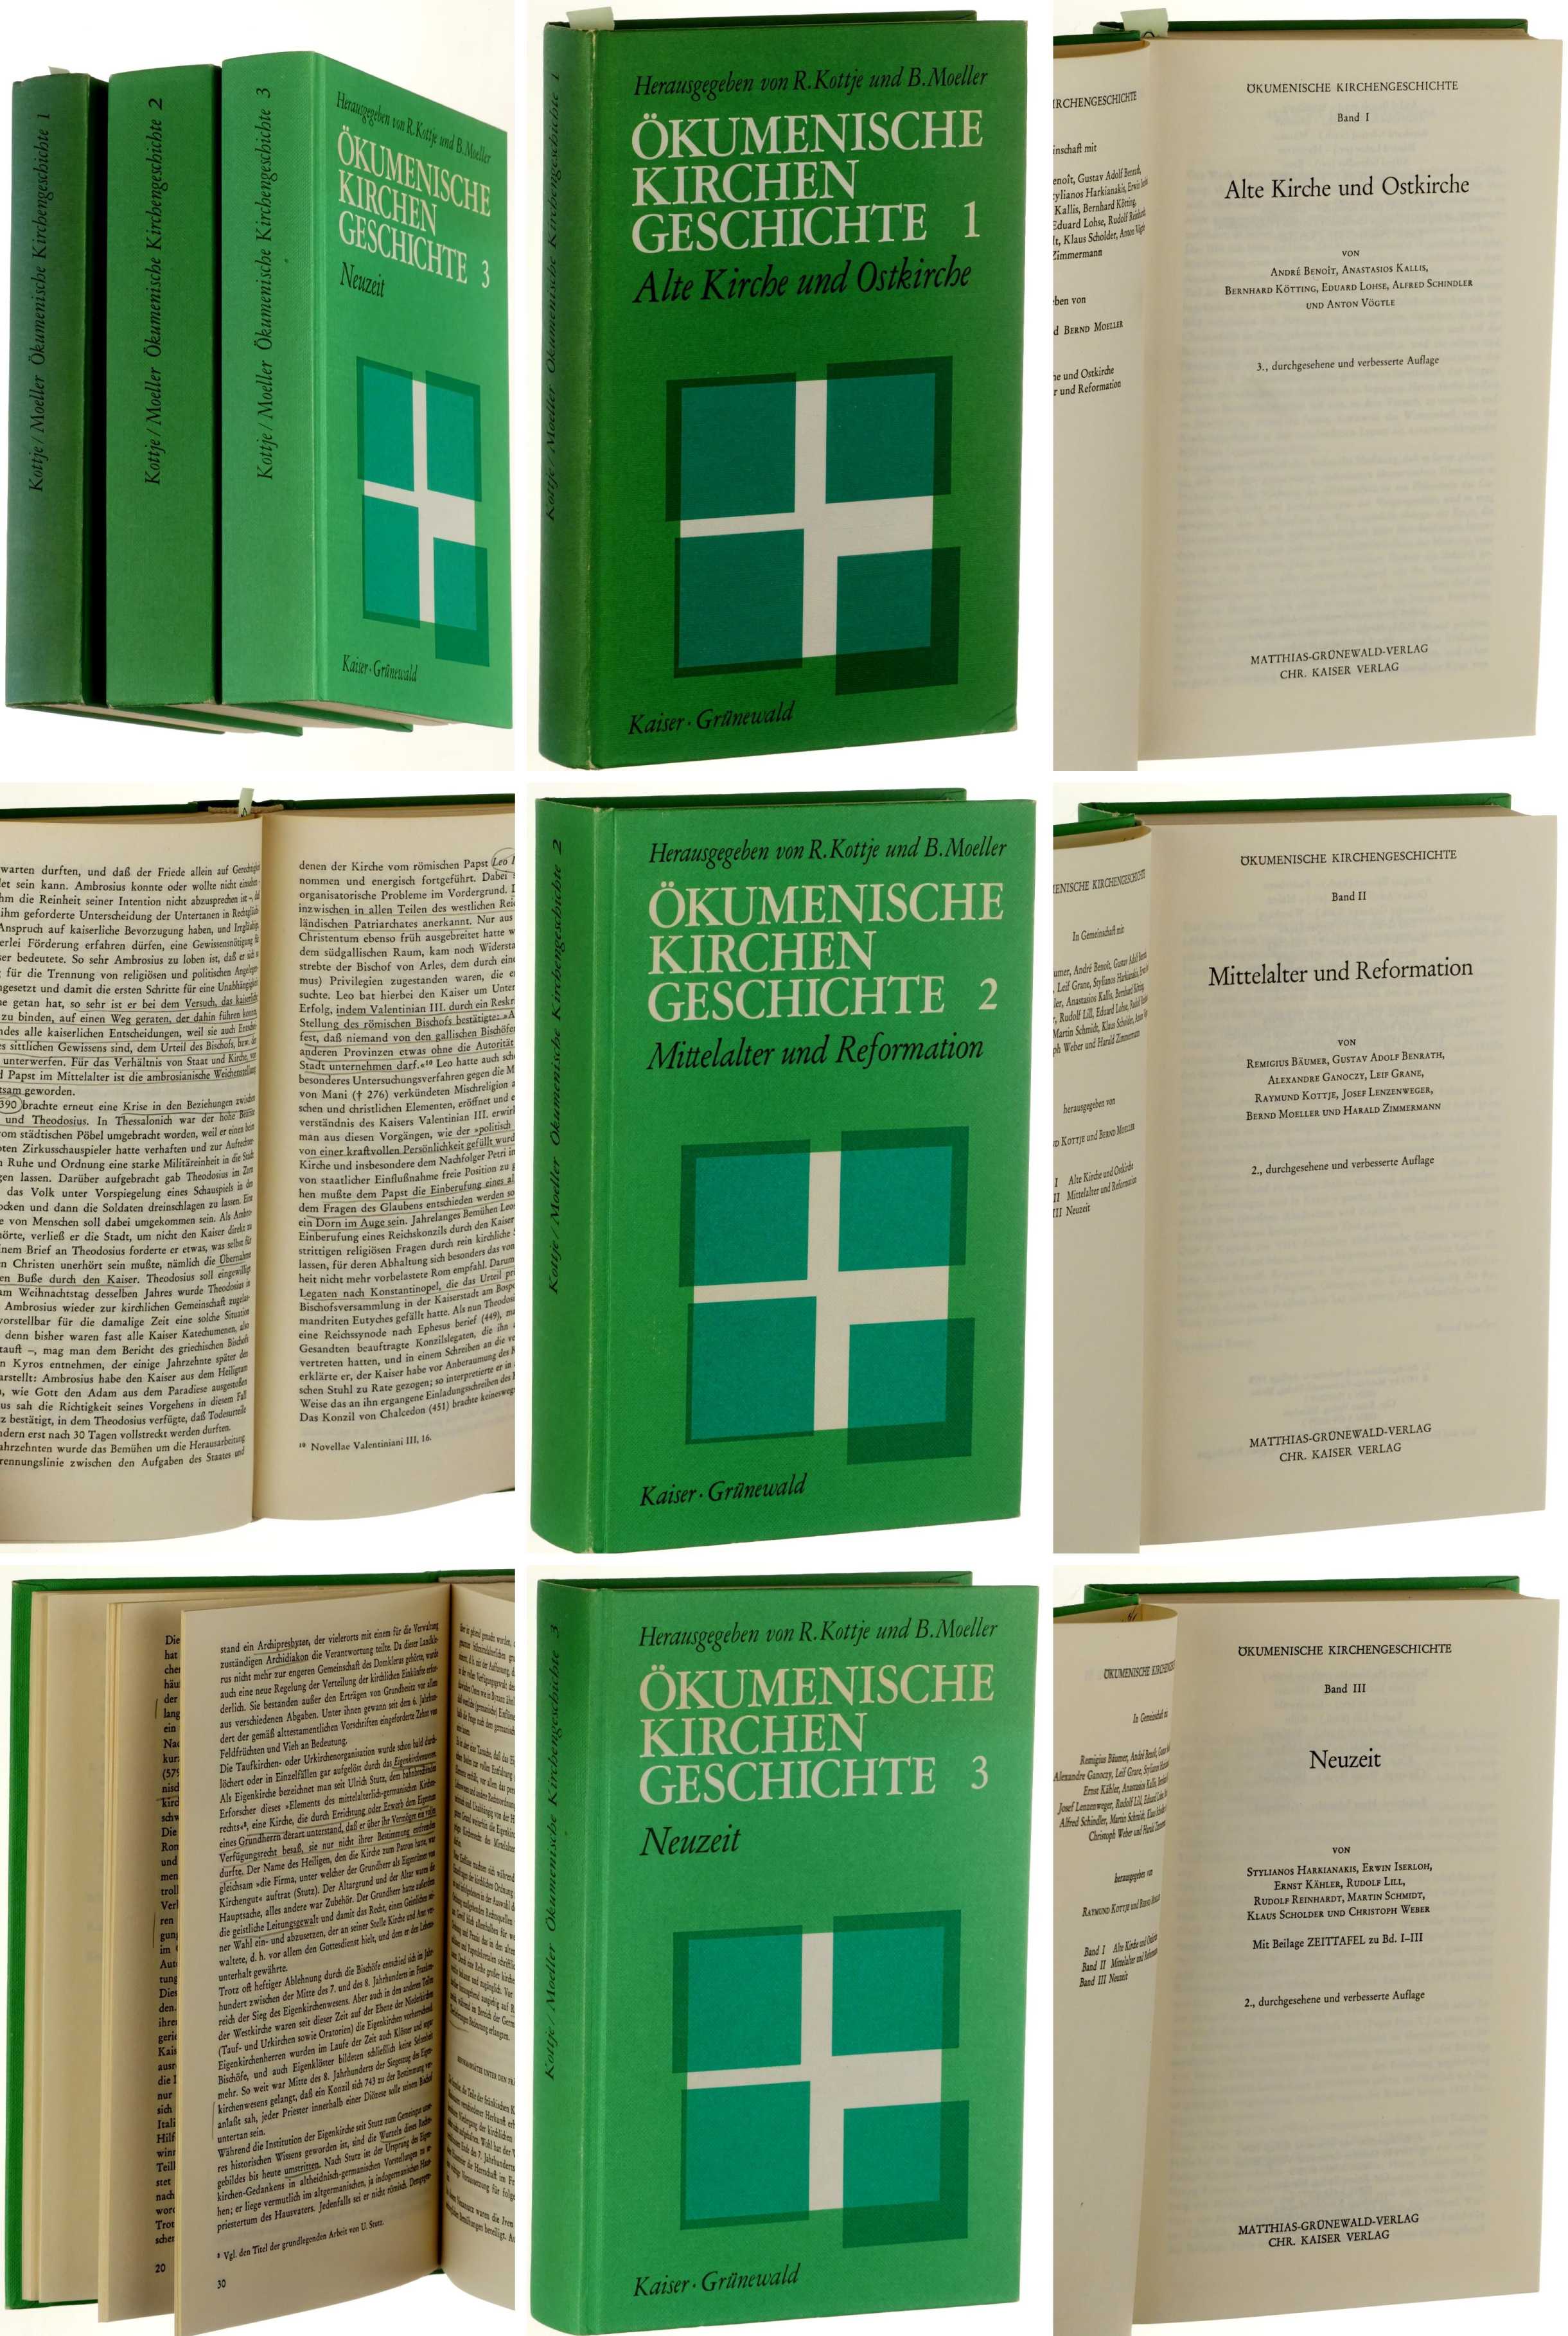   Ökumenische Kirchengeschichte. Hrsg. von R. Kottje und B. Moeller. 3 Bände (Bd. 1: Alte Kirche Und Ostkirche;  Bd. 2: Mittelalter und Reformation;  Bd. 3: Neuzeit). 